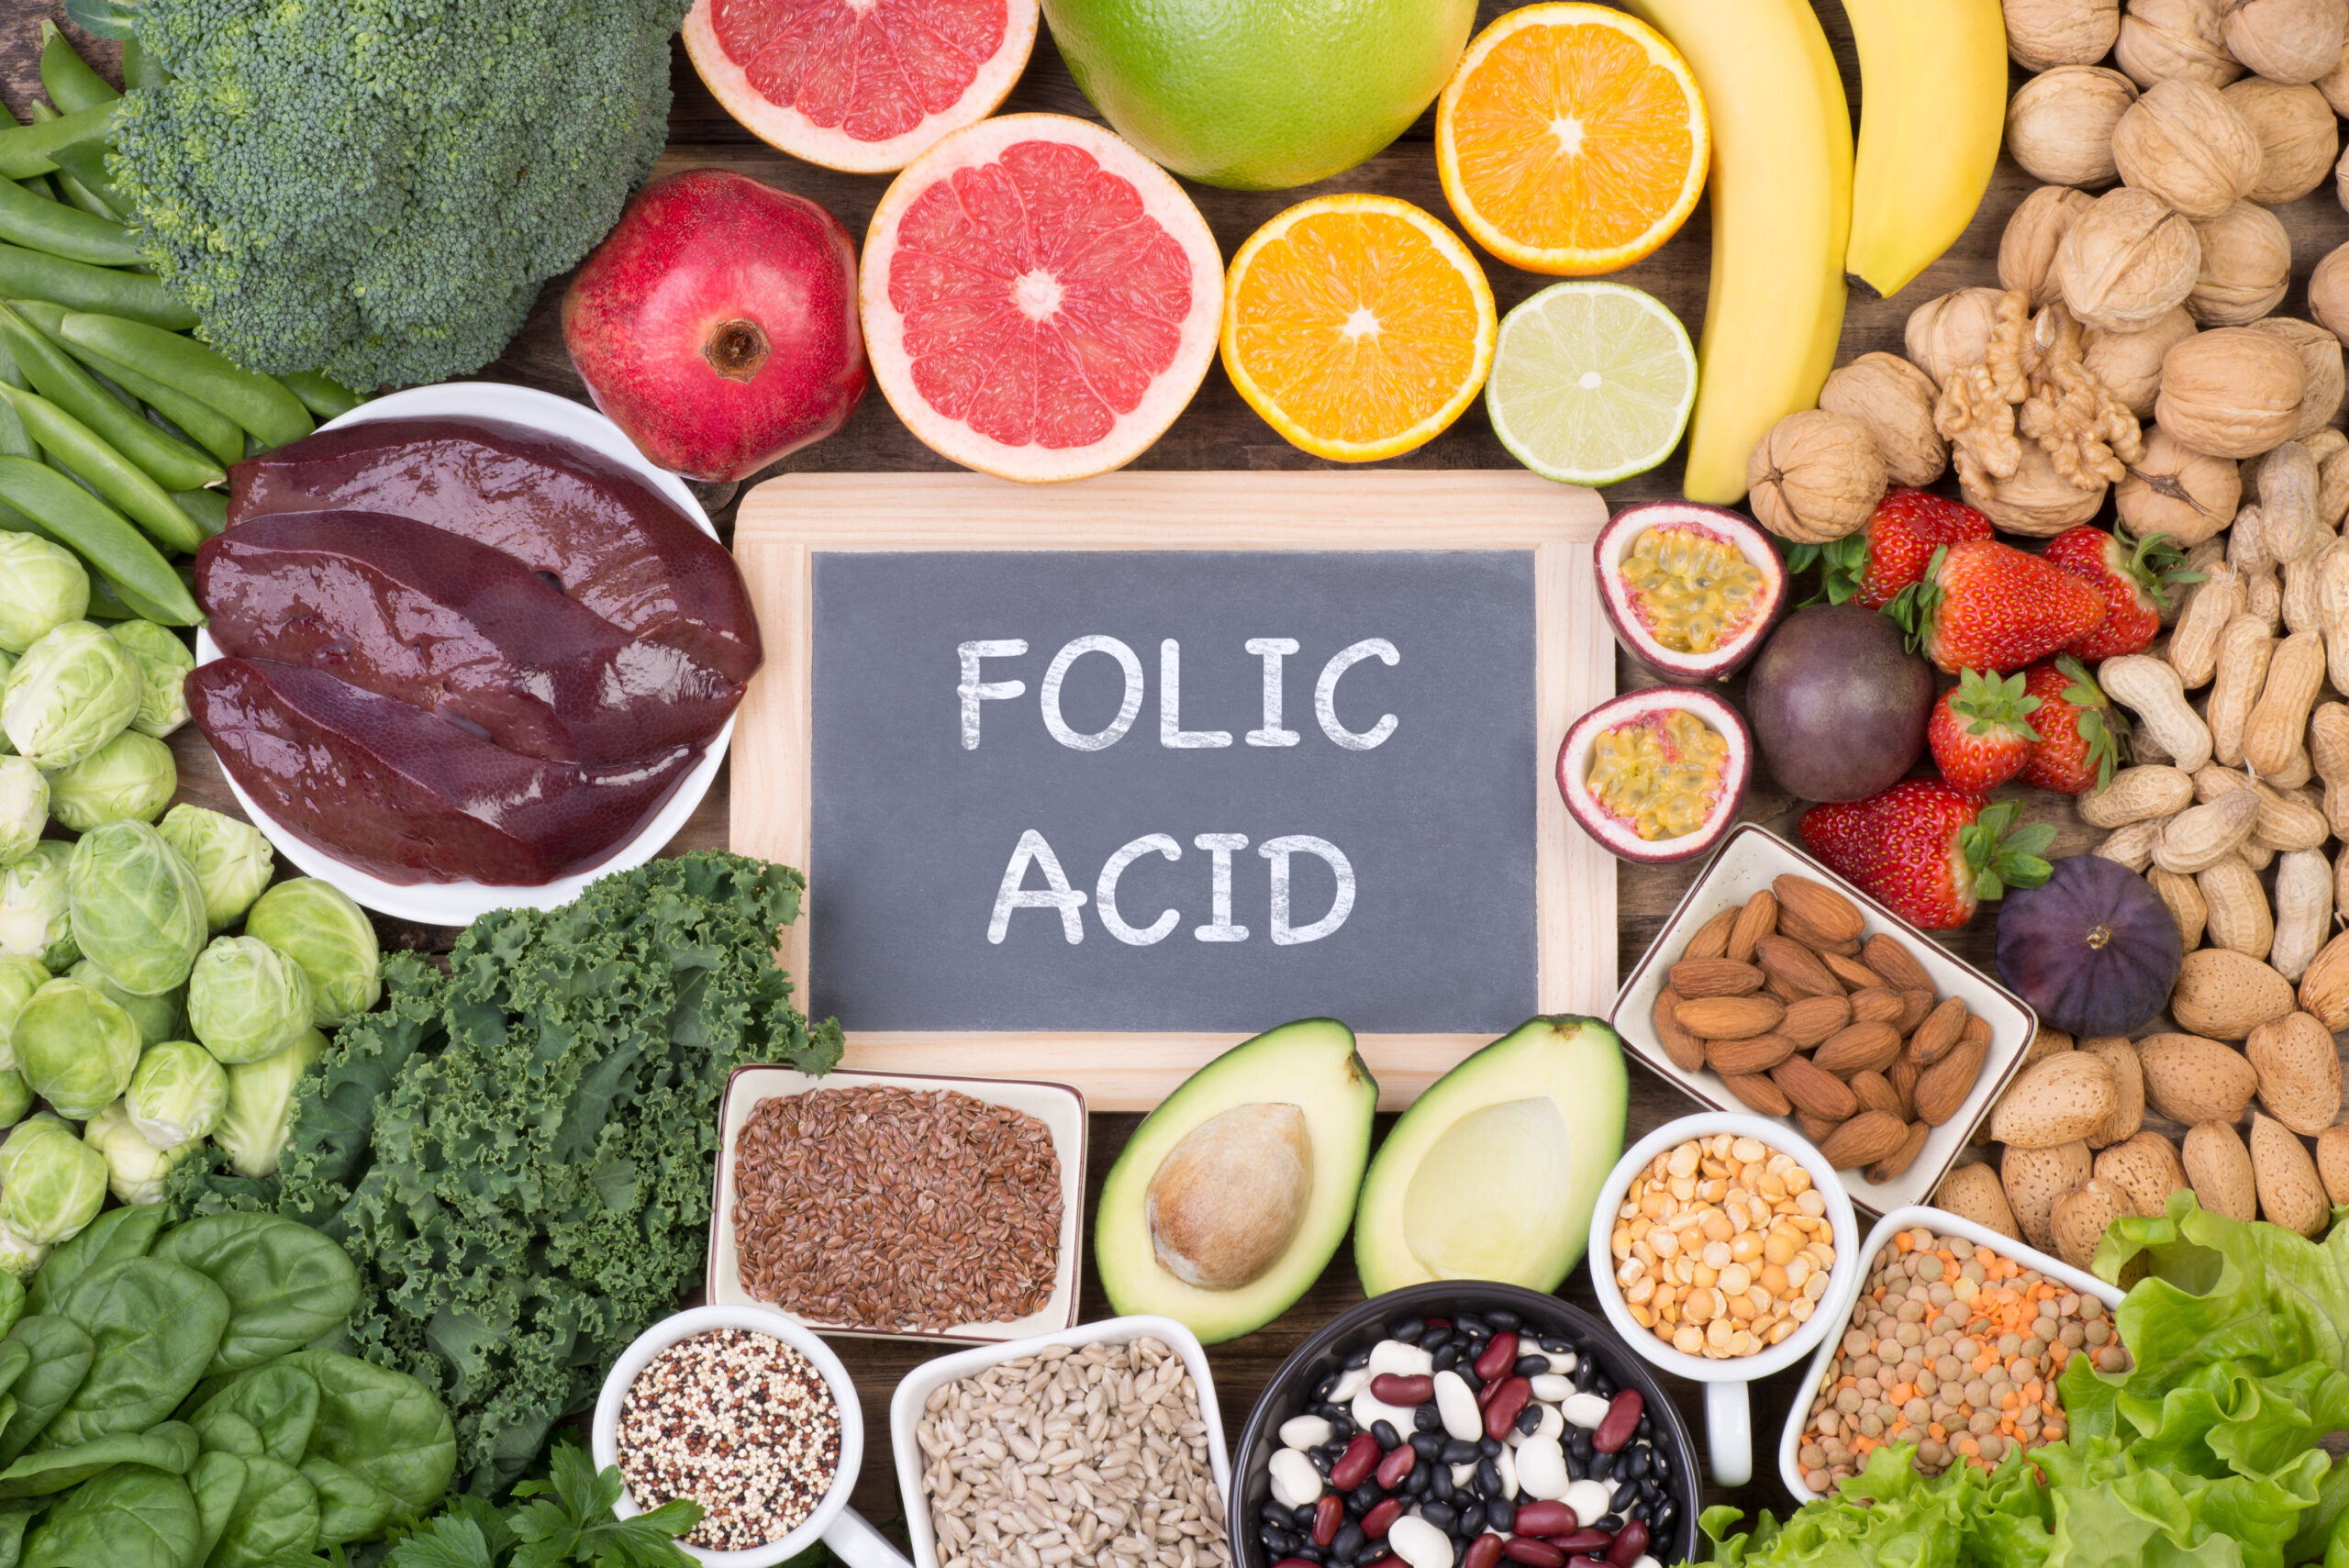 Benefits of Folic Acid for Your Dog